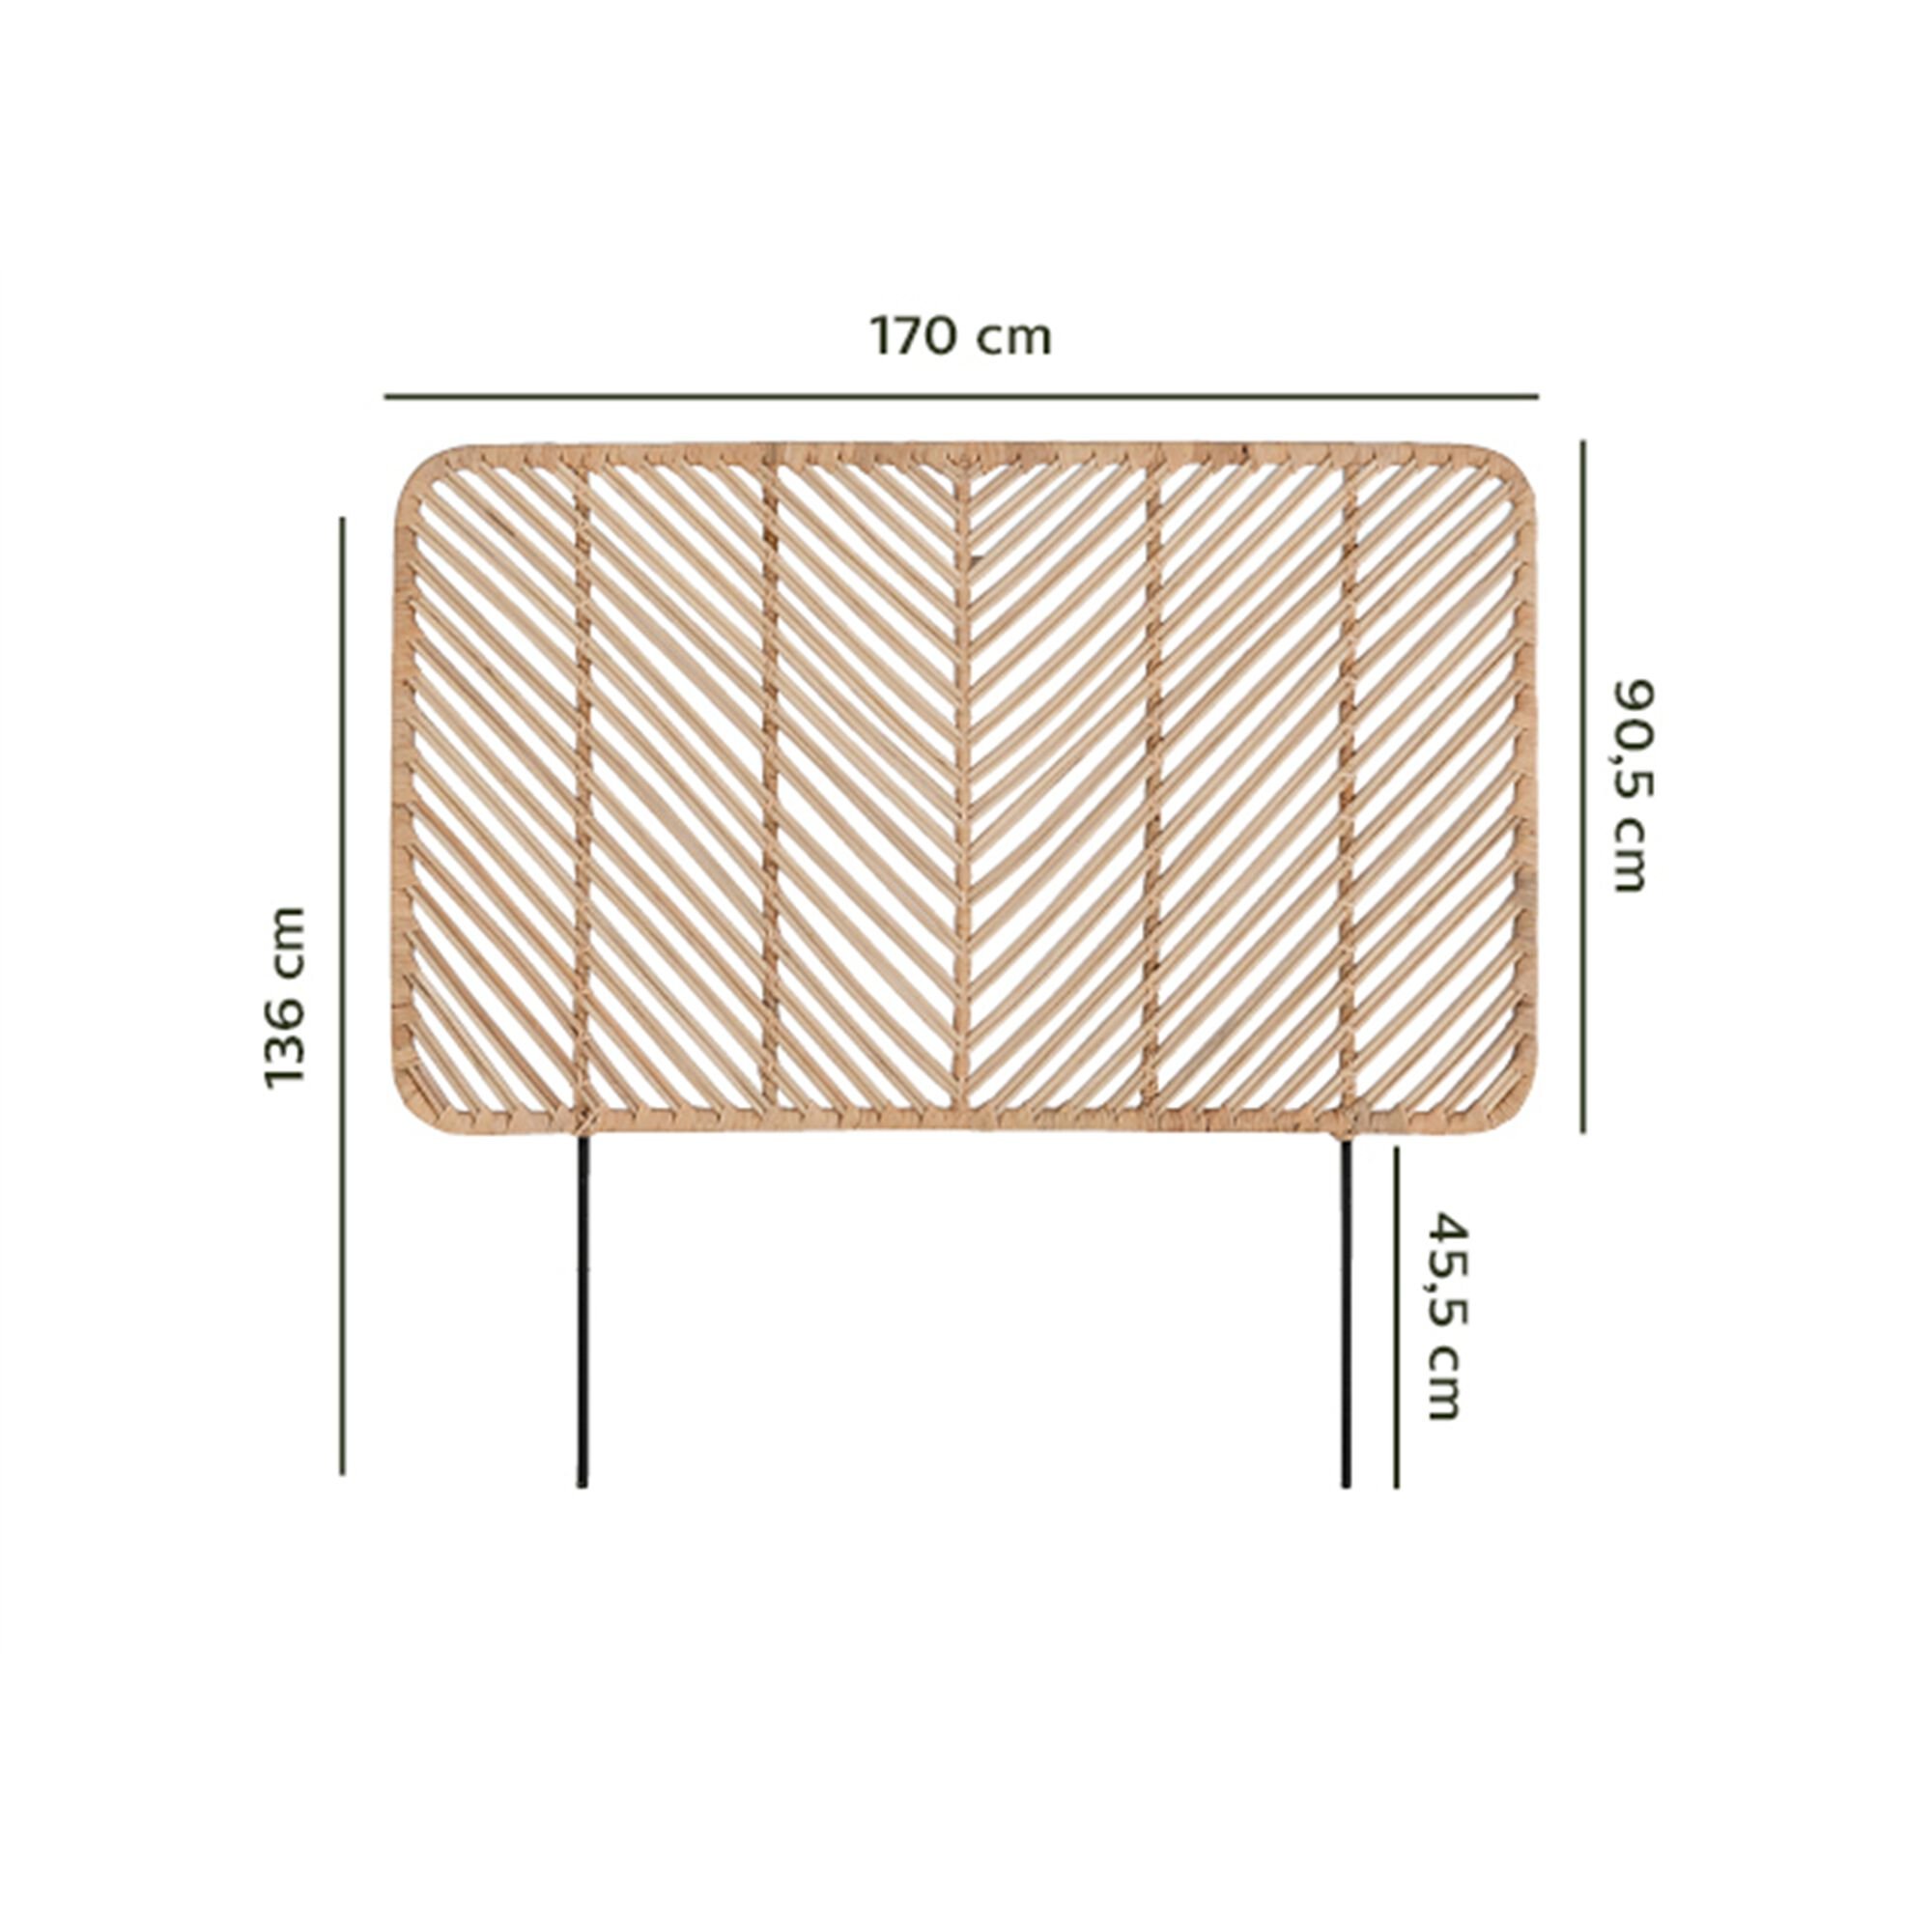 Tête de lit en rotin - L170cm-ARTEMIS